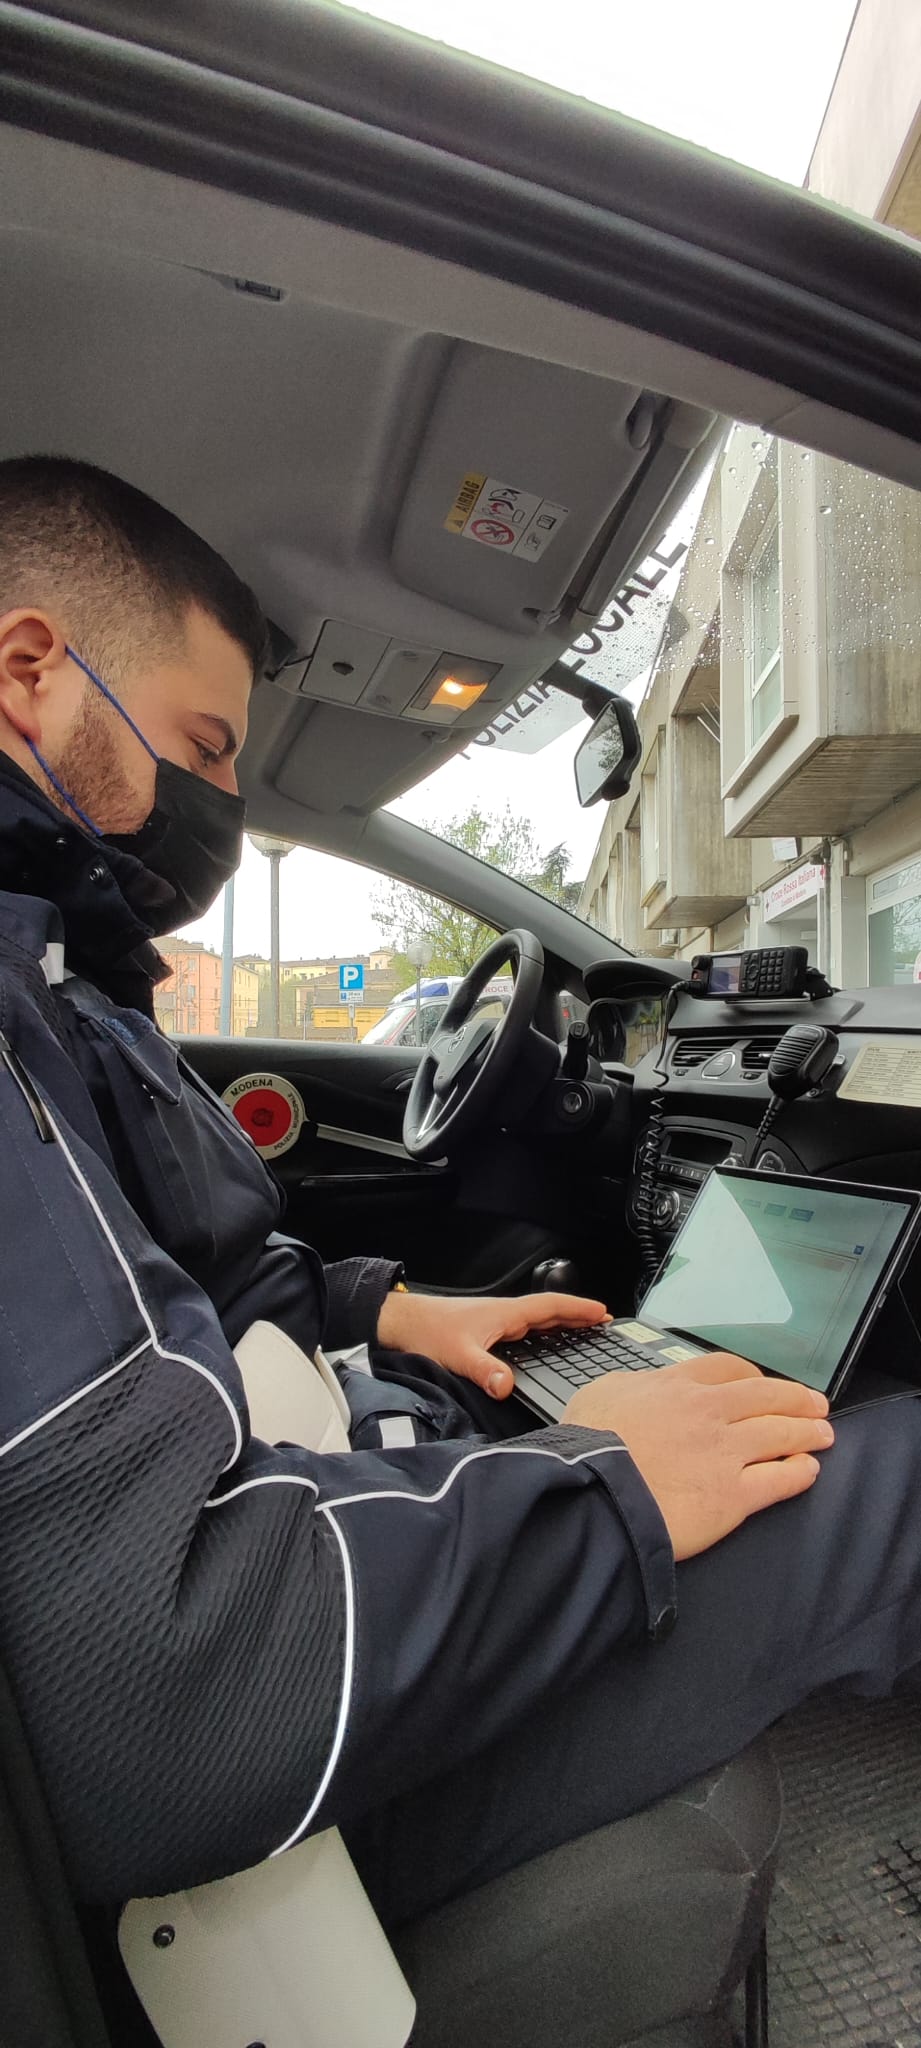  Polizia locale, controlli più efficaci grazie a 40 tablet